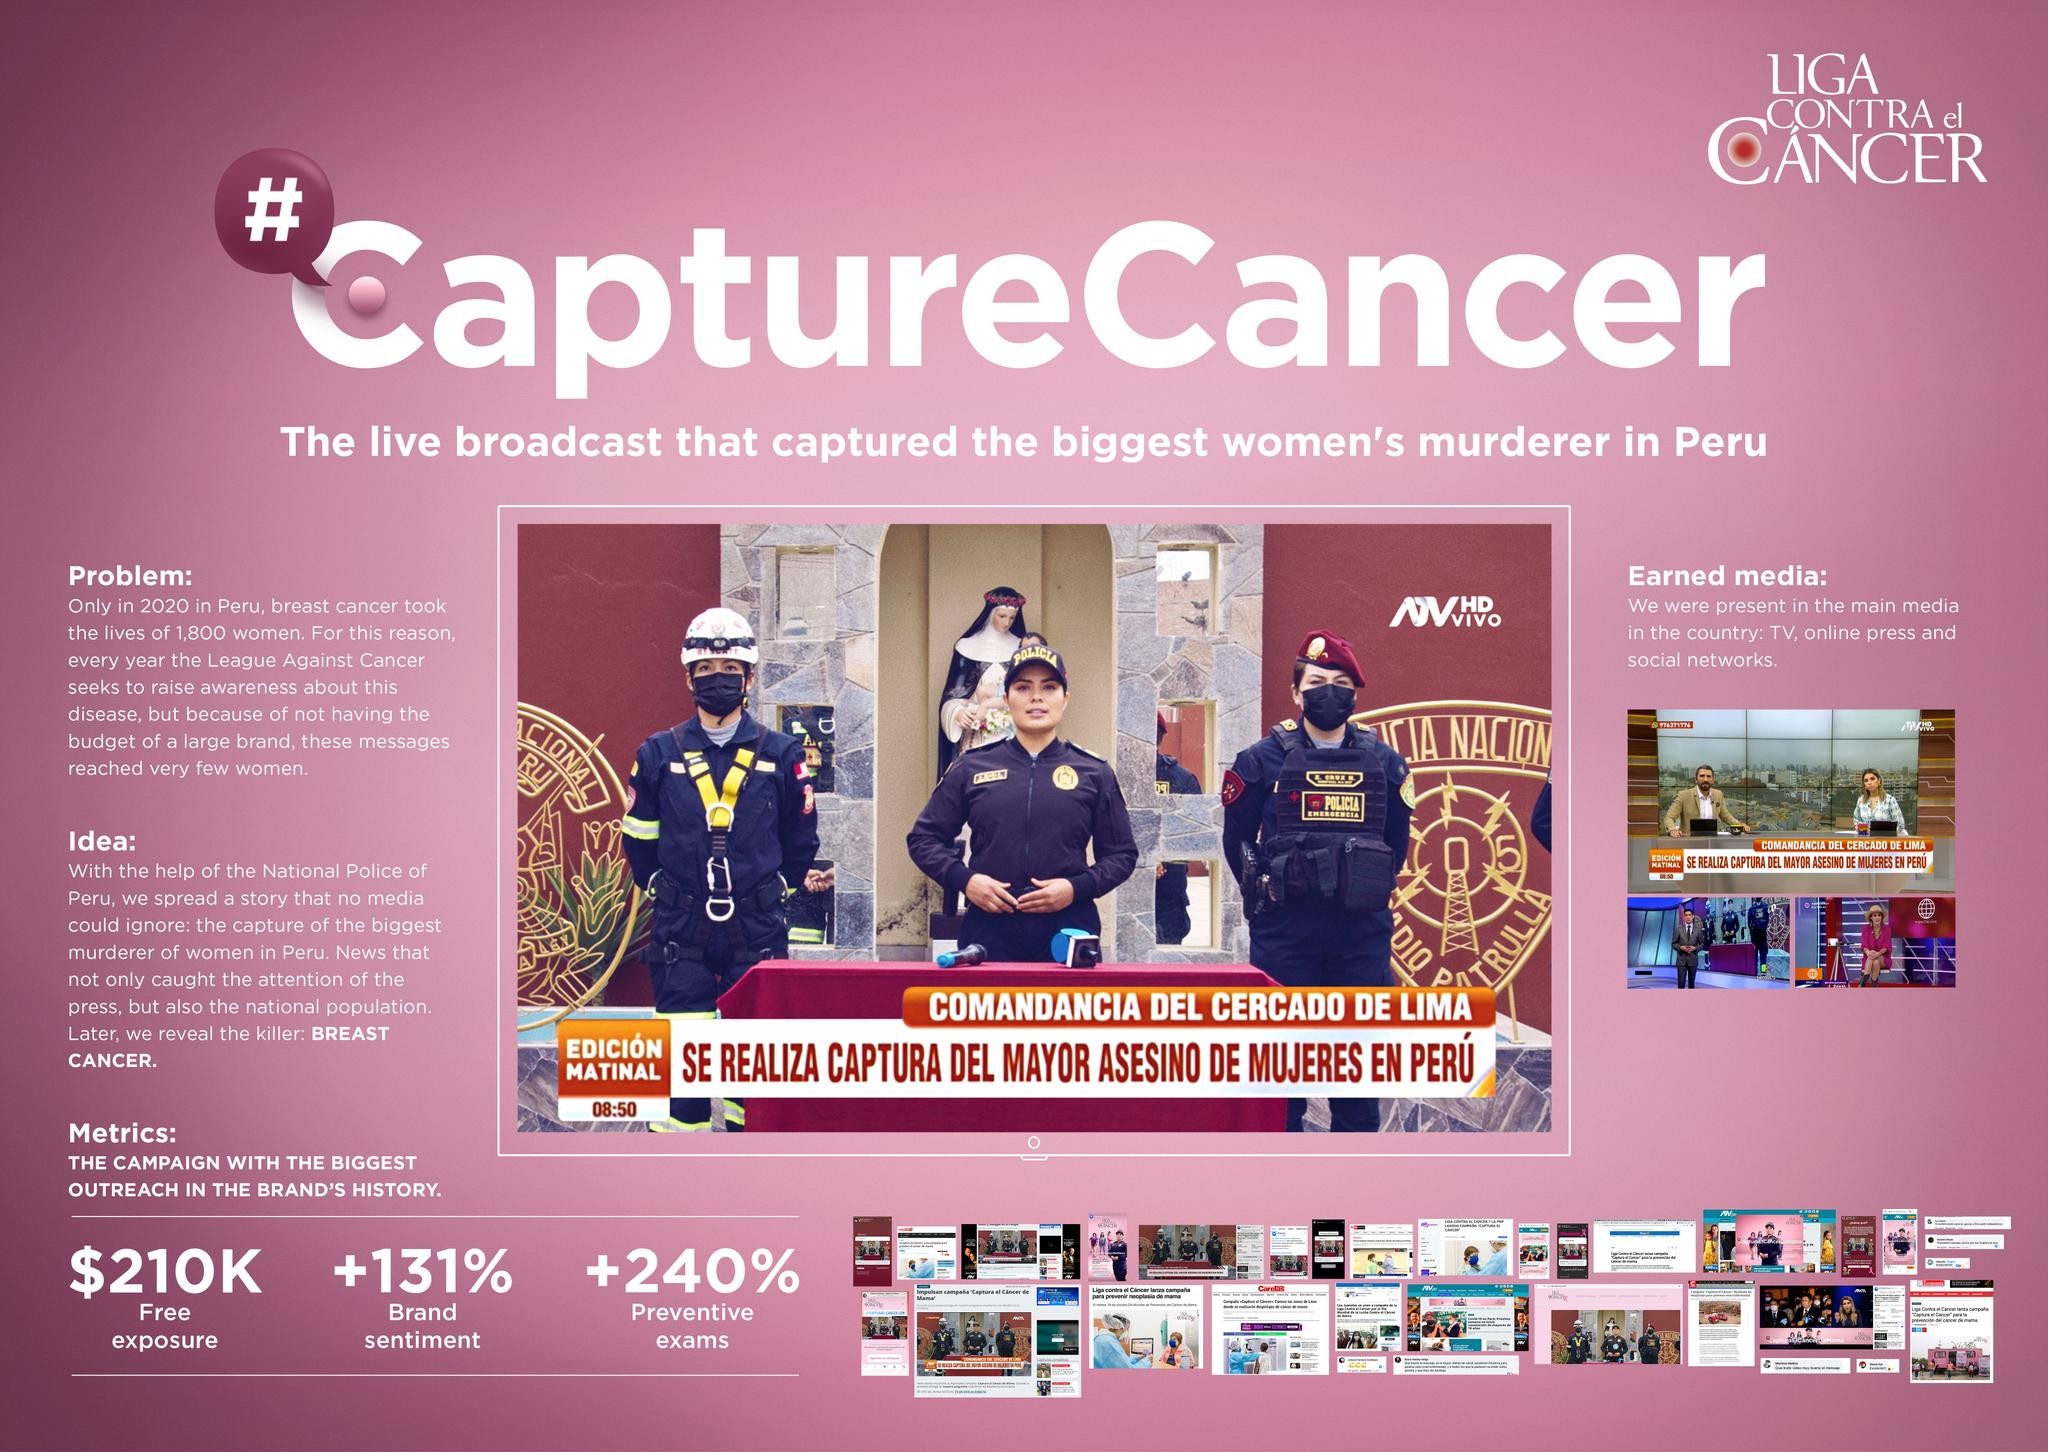 Capture Cancer